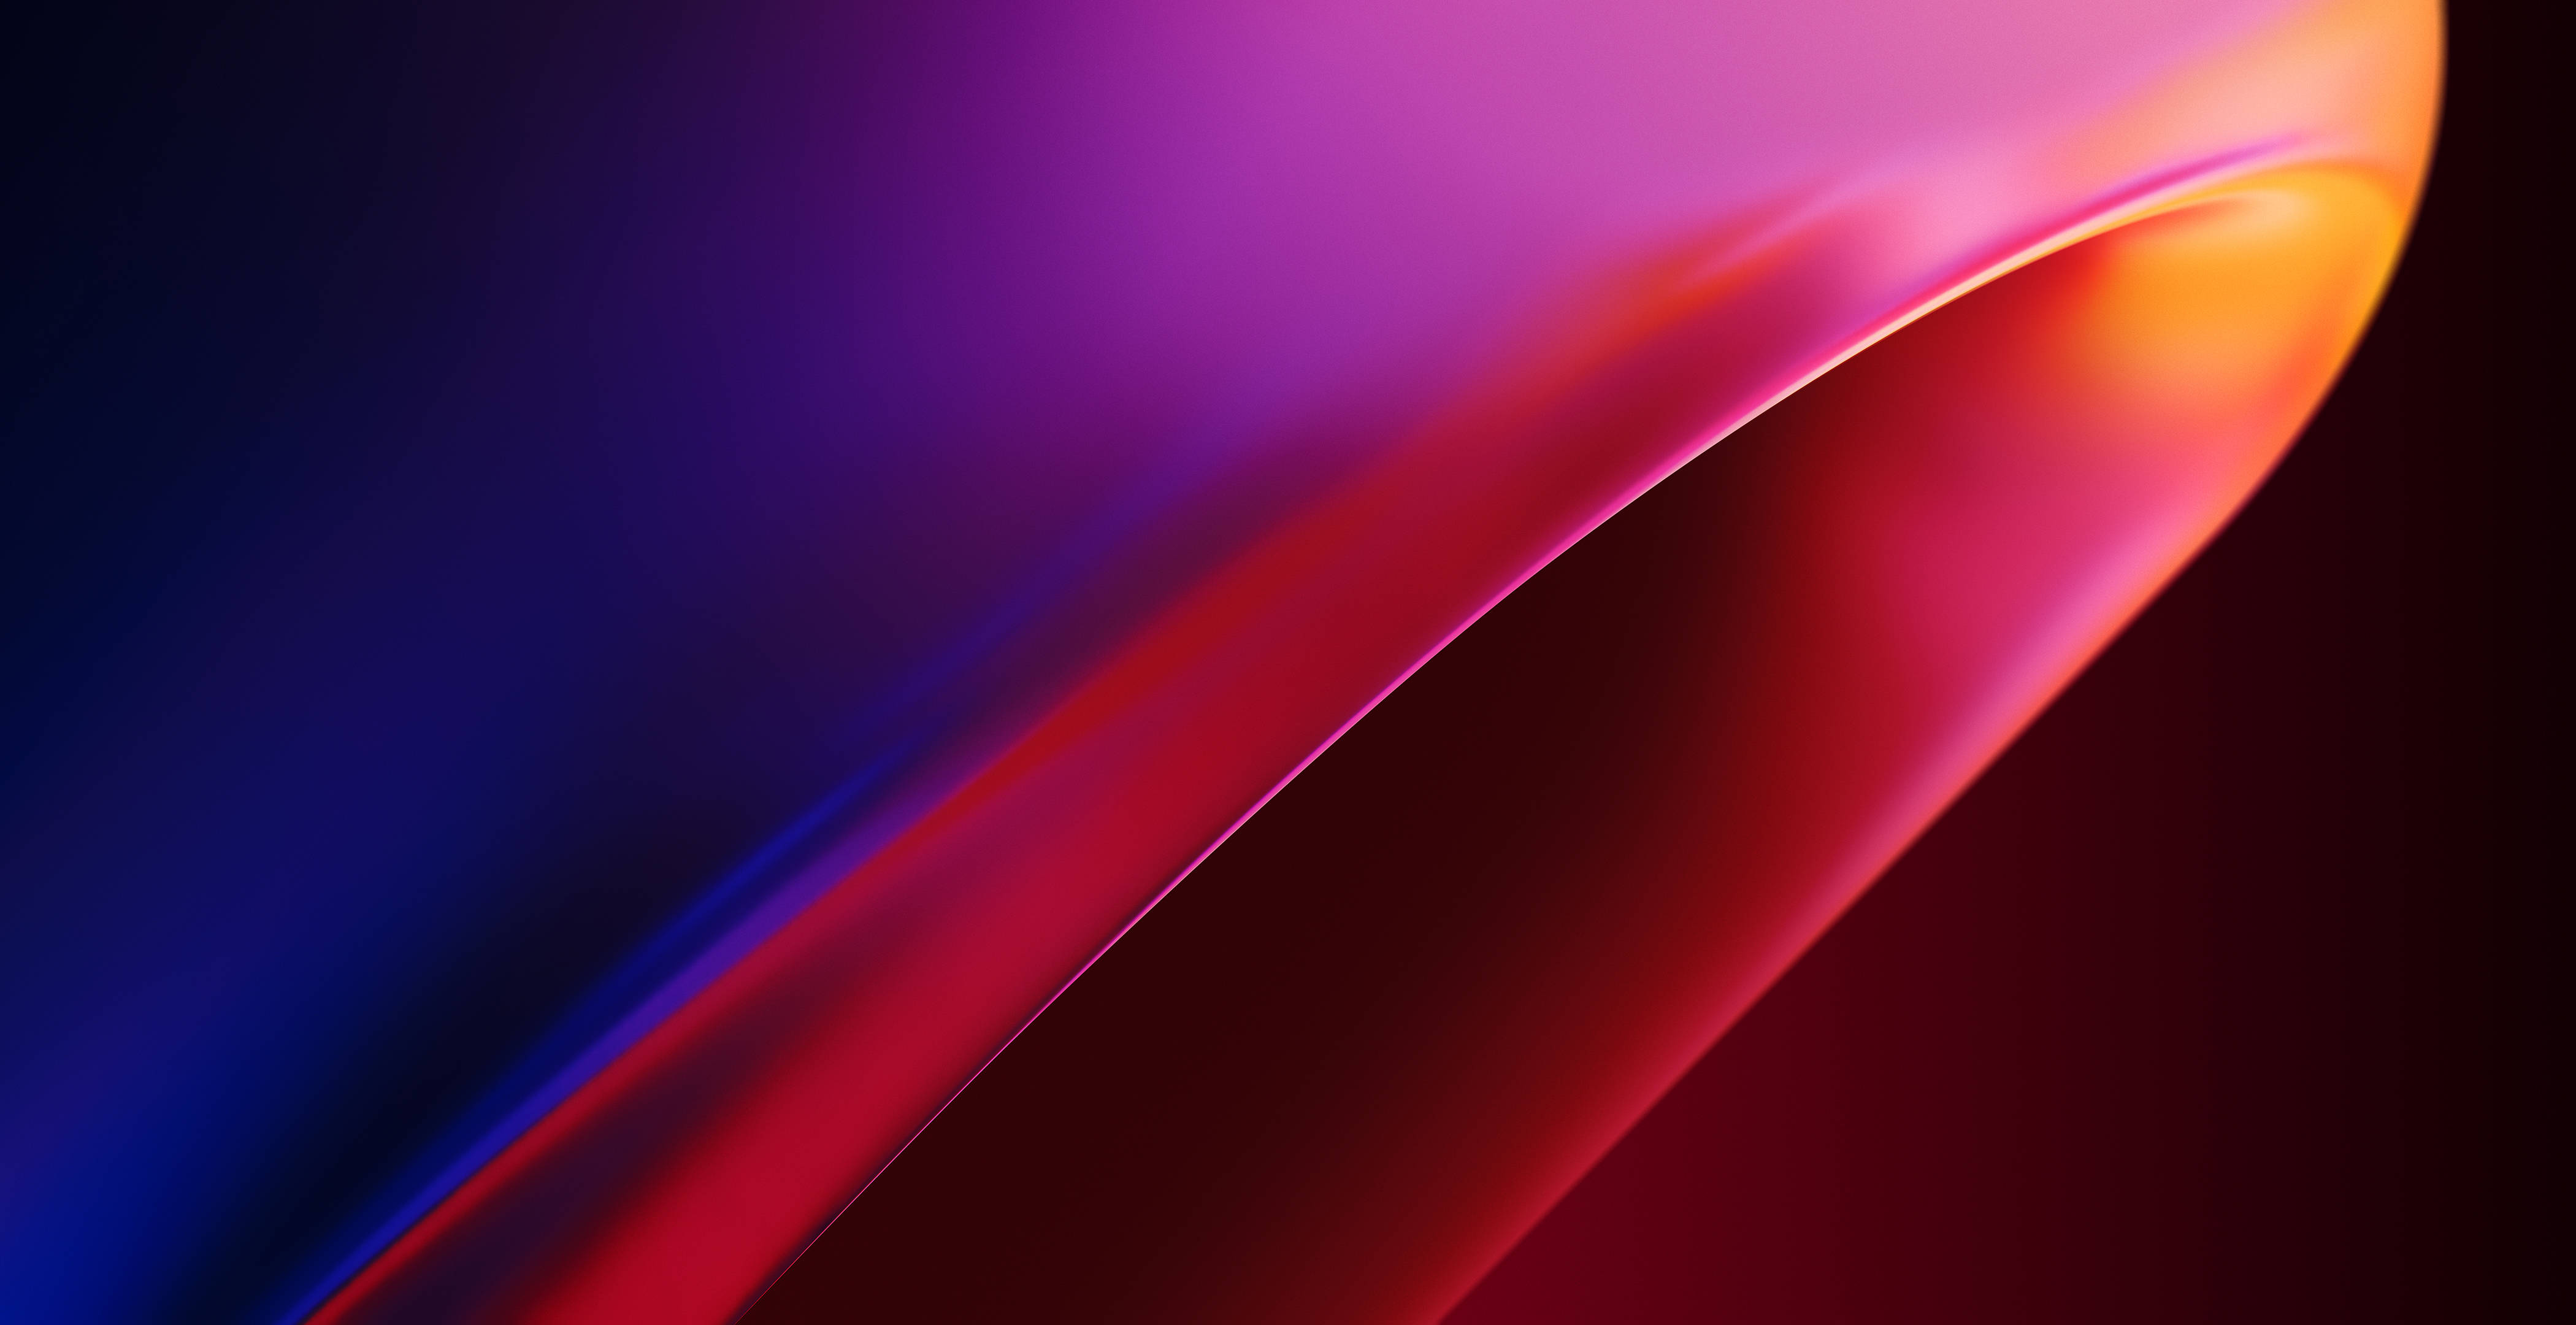 Từ màu tím đến đỏ rực, những hình nền 4D chất lượng cao sẽ khiến bạn phải trầm trồ với chất lượng siêu nét. Dù bạn sử dụng trong công việc hay giải trí, chúng sẽ khiến màn hình máy tính của bạn thật sự nổi bật.